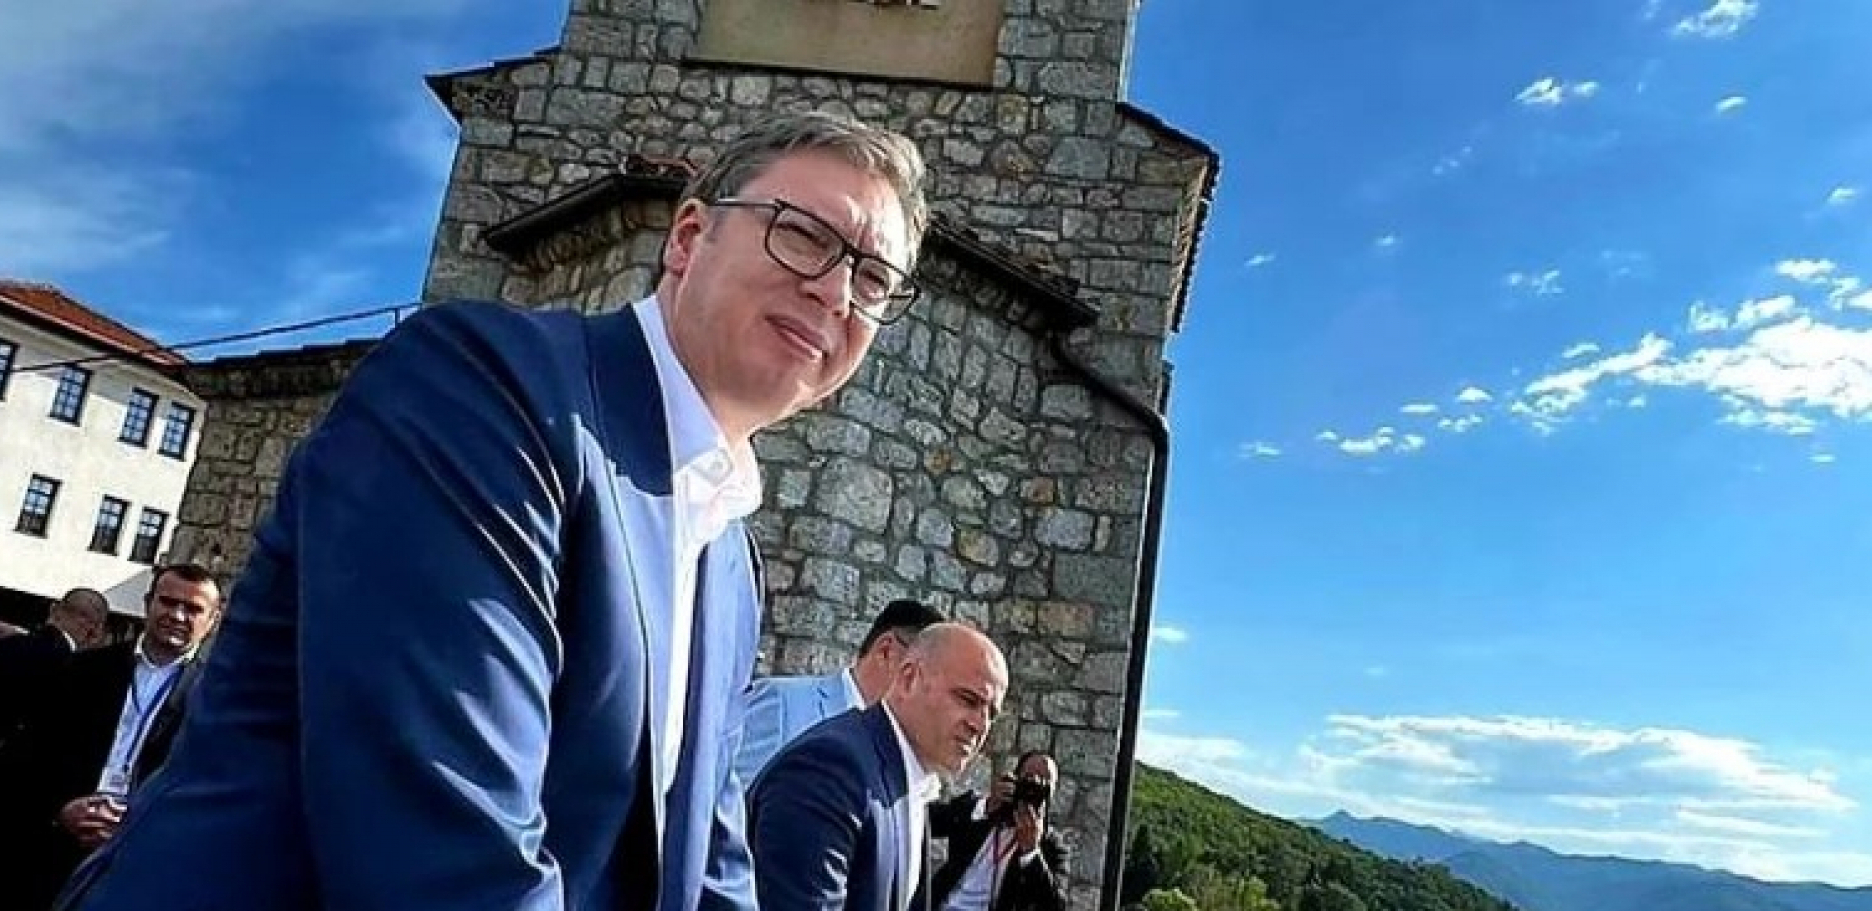 NA OVOM MESTU NASTALO JE ĆIRILIČNO PISMO  Predsednik Vučić posetio jedan od najznačajnijih pravoslavnih hramova, ovo je njegova poruka Srbiji (FOTO)